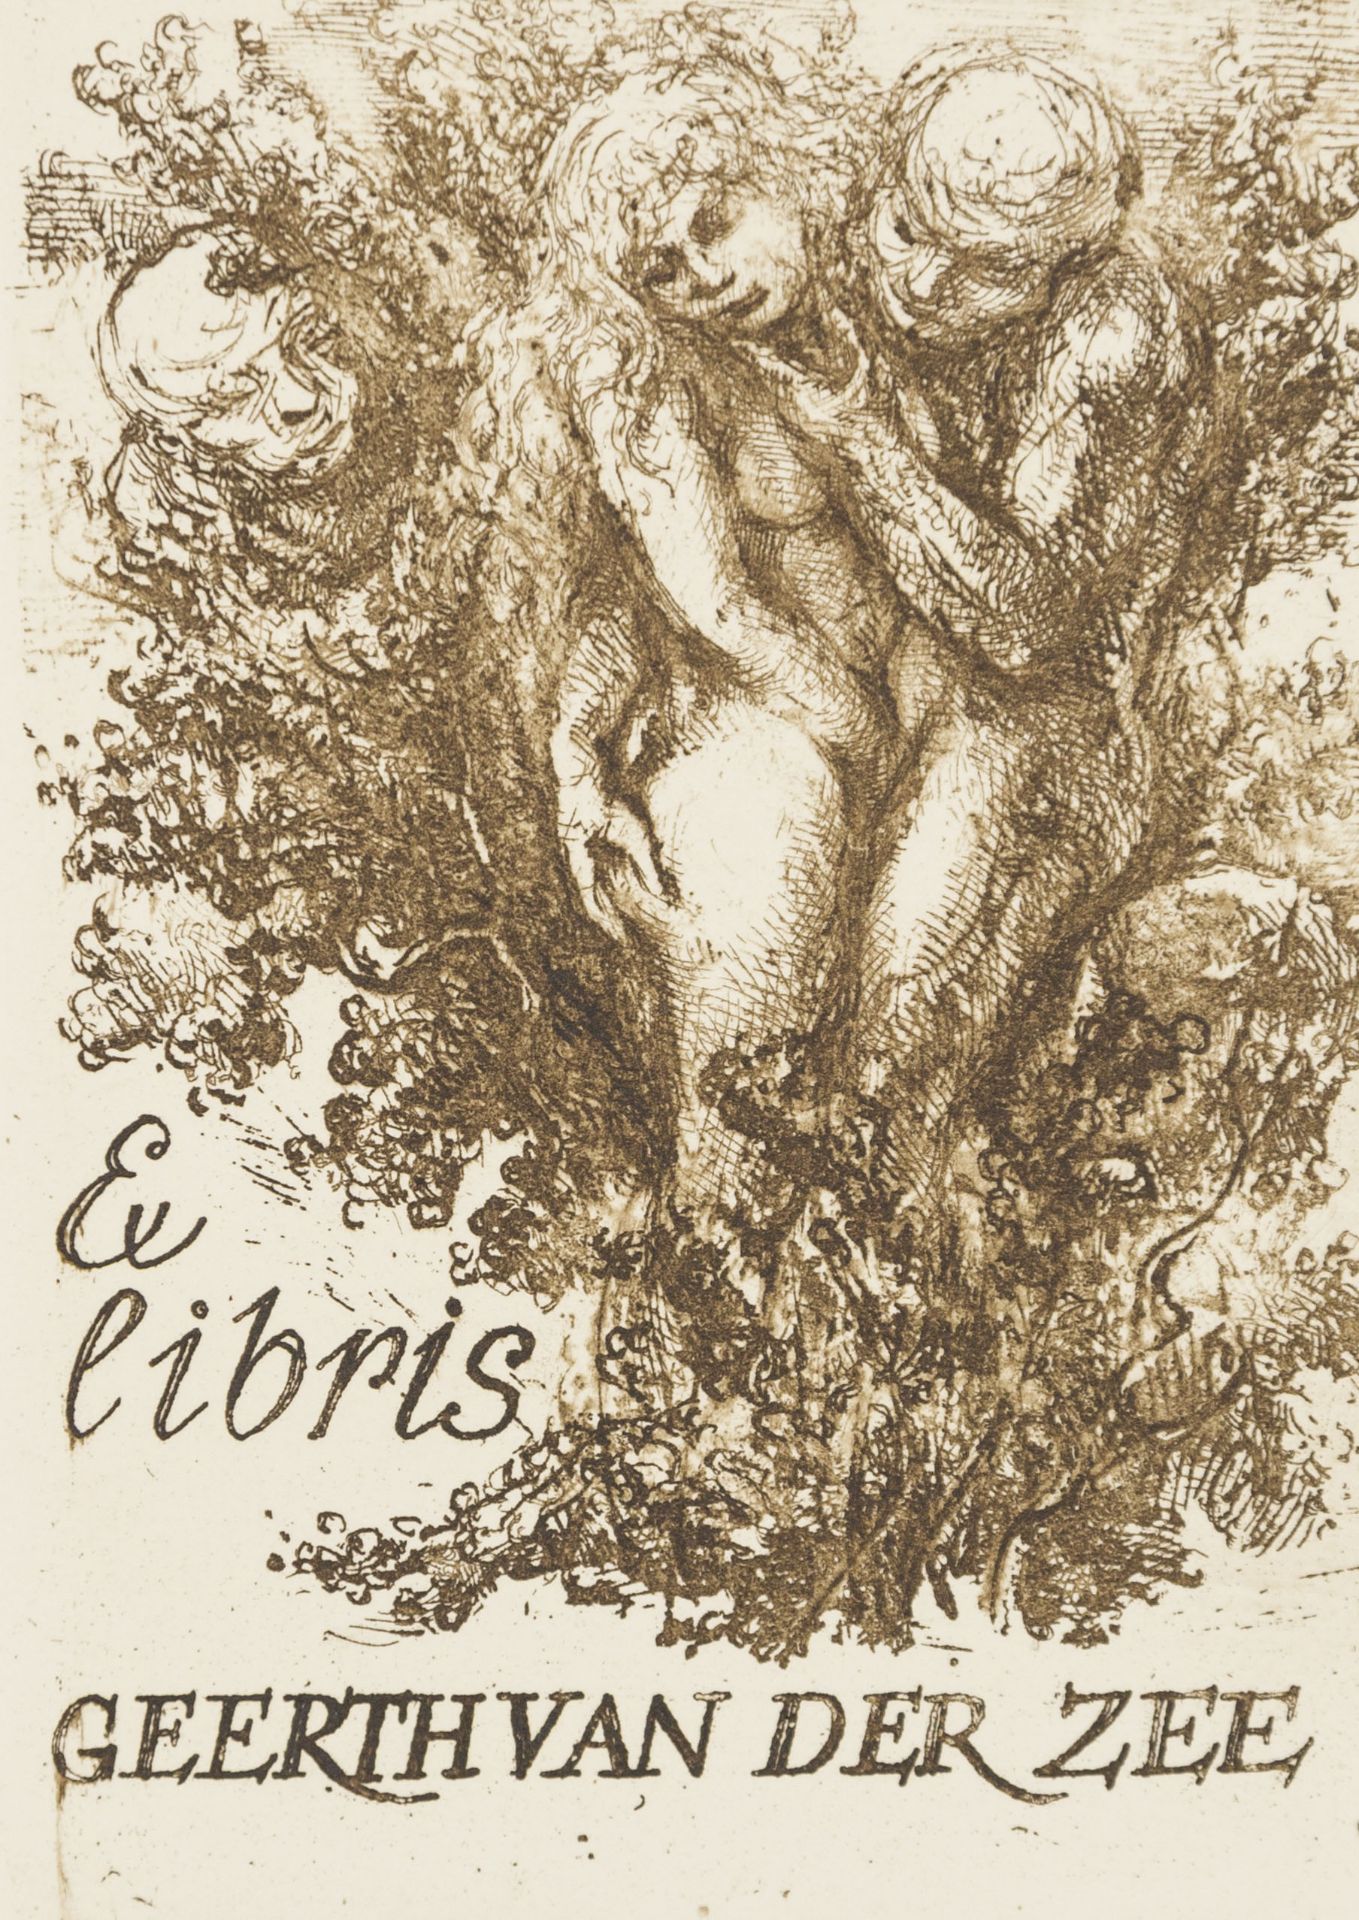 Exlibris eroticis. - Image 2 of 2